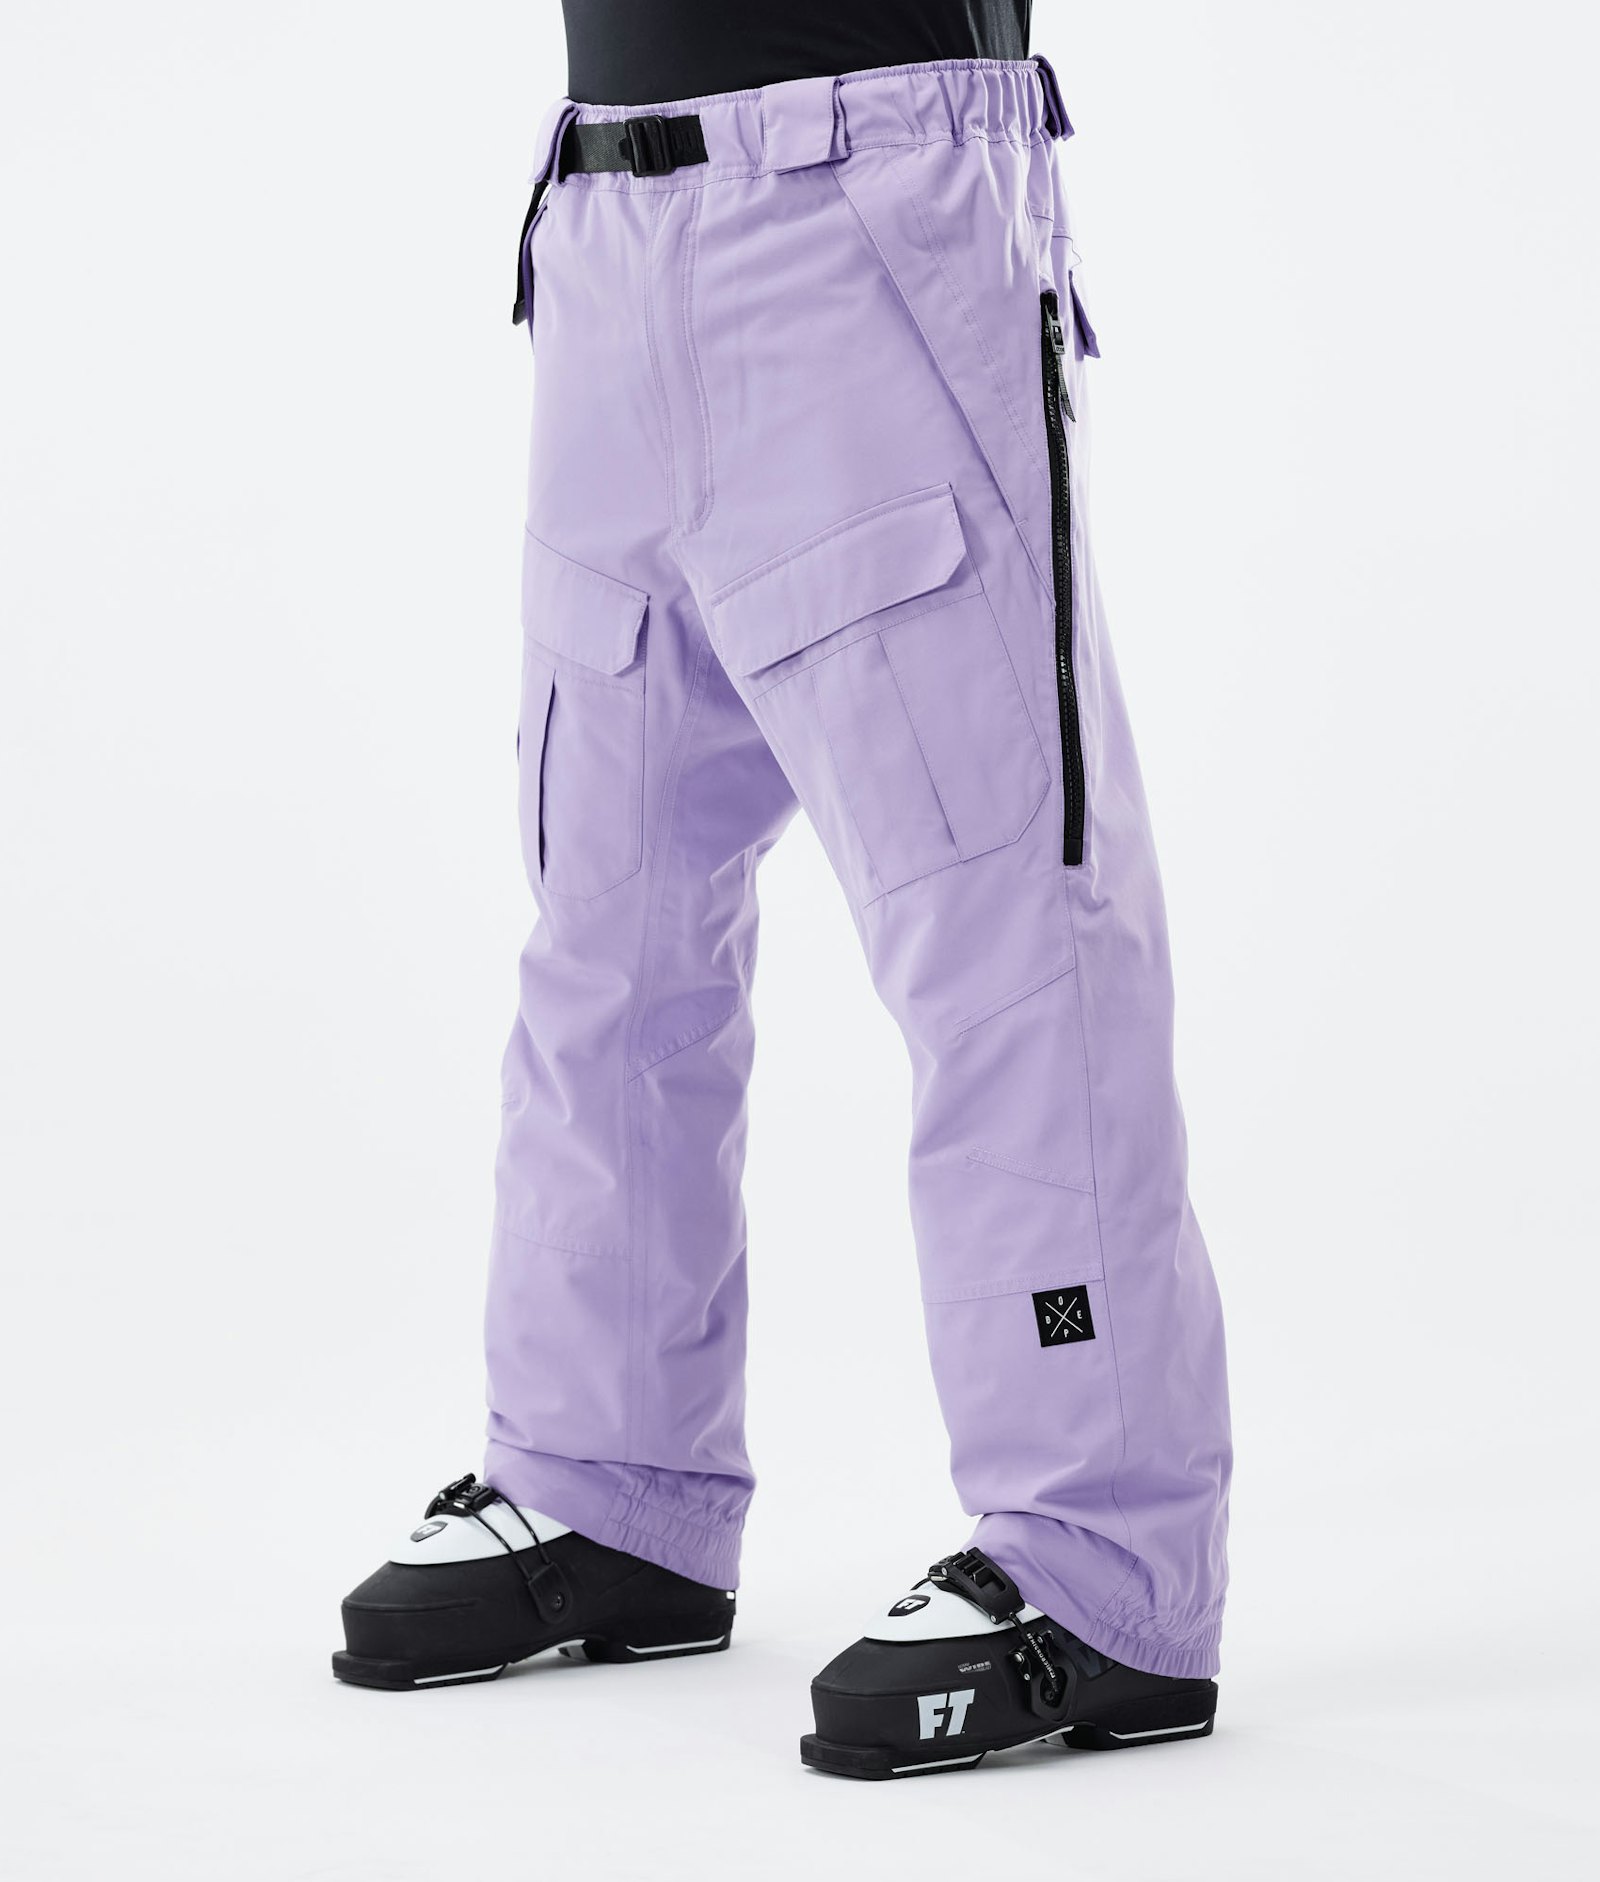 Antek 2021 スキーパンツ メンズ Faded Violet